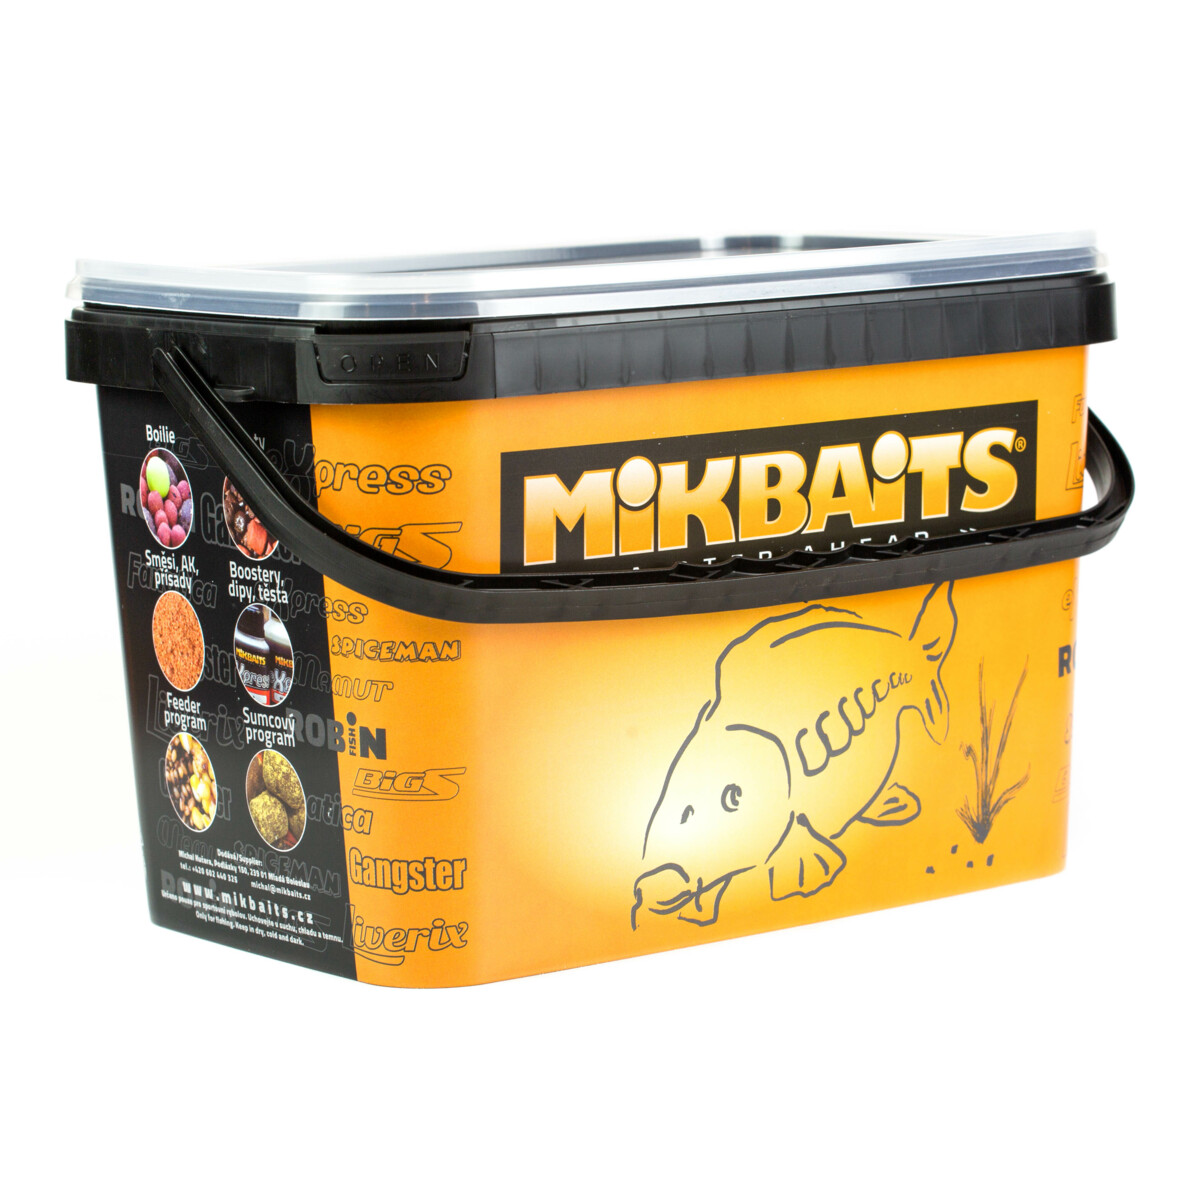 MIKBAITS Spiceman boilie 2,5kg - Chilli Squid 20mm